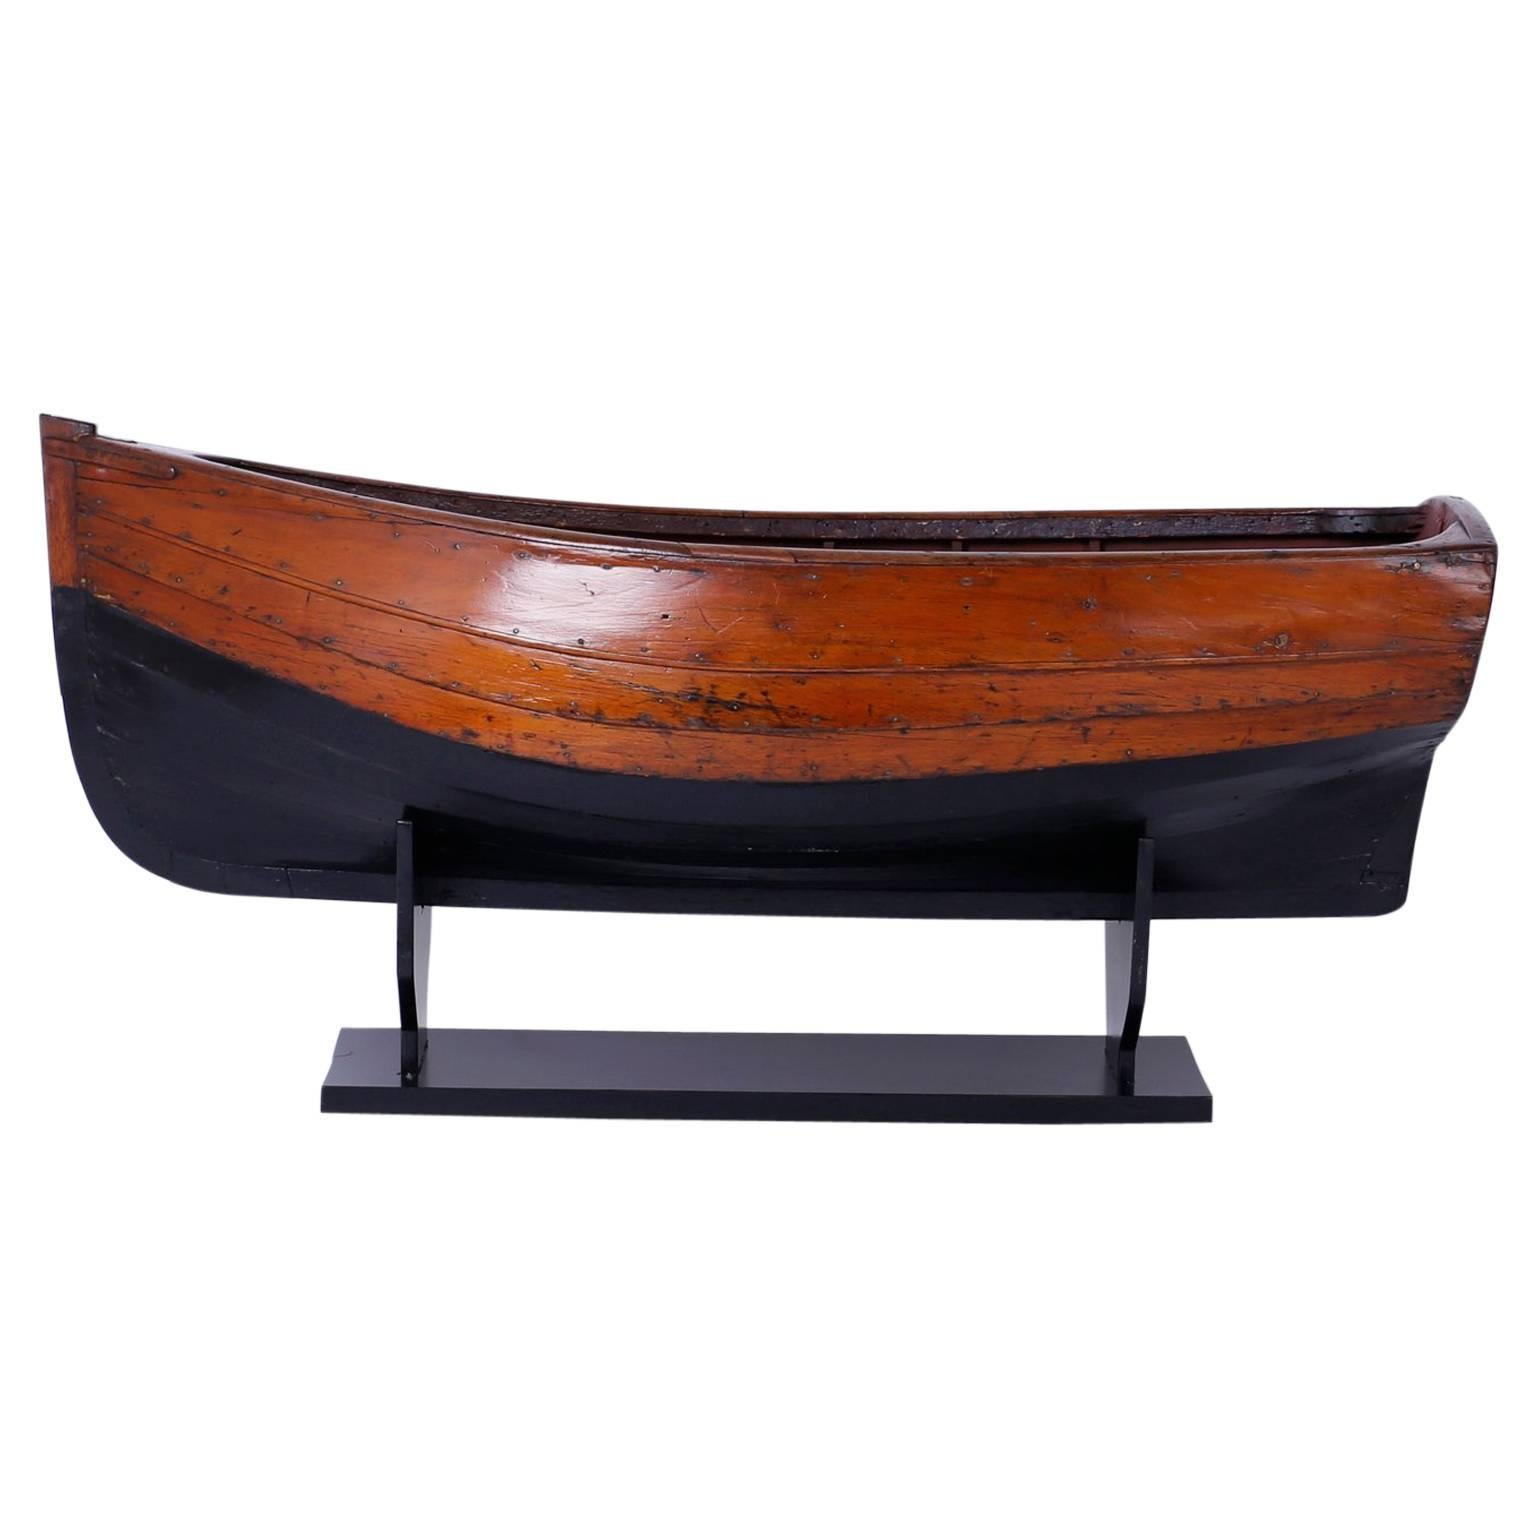 Großes antikes Mahagoni-Boot-Modell